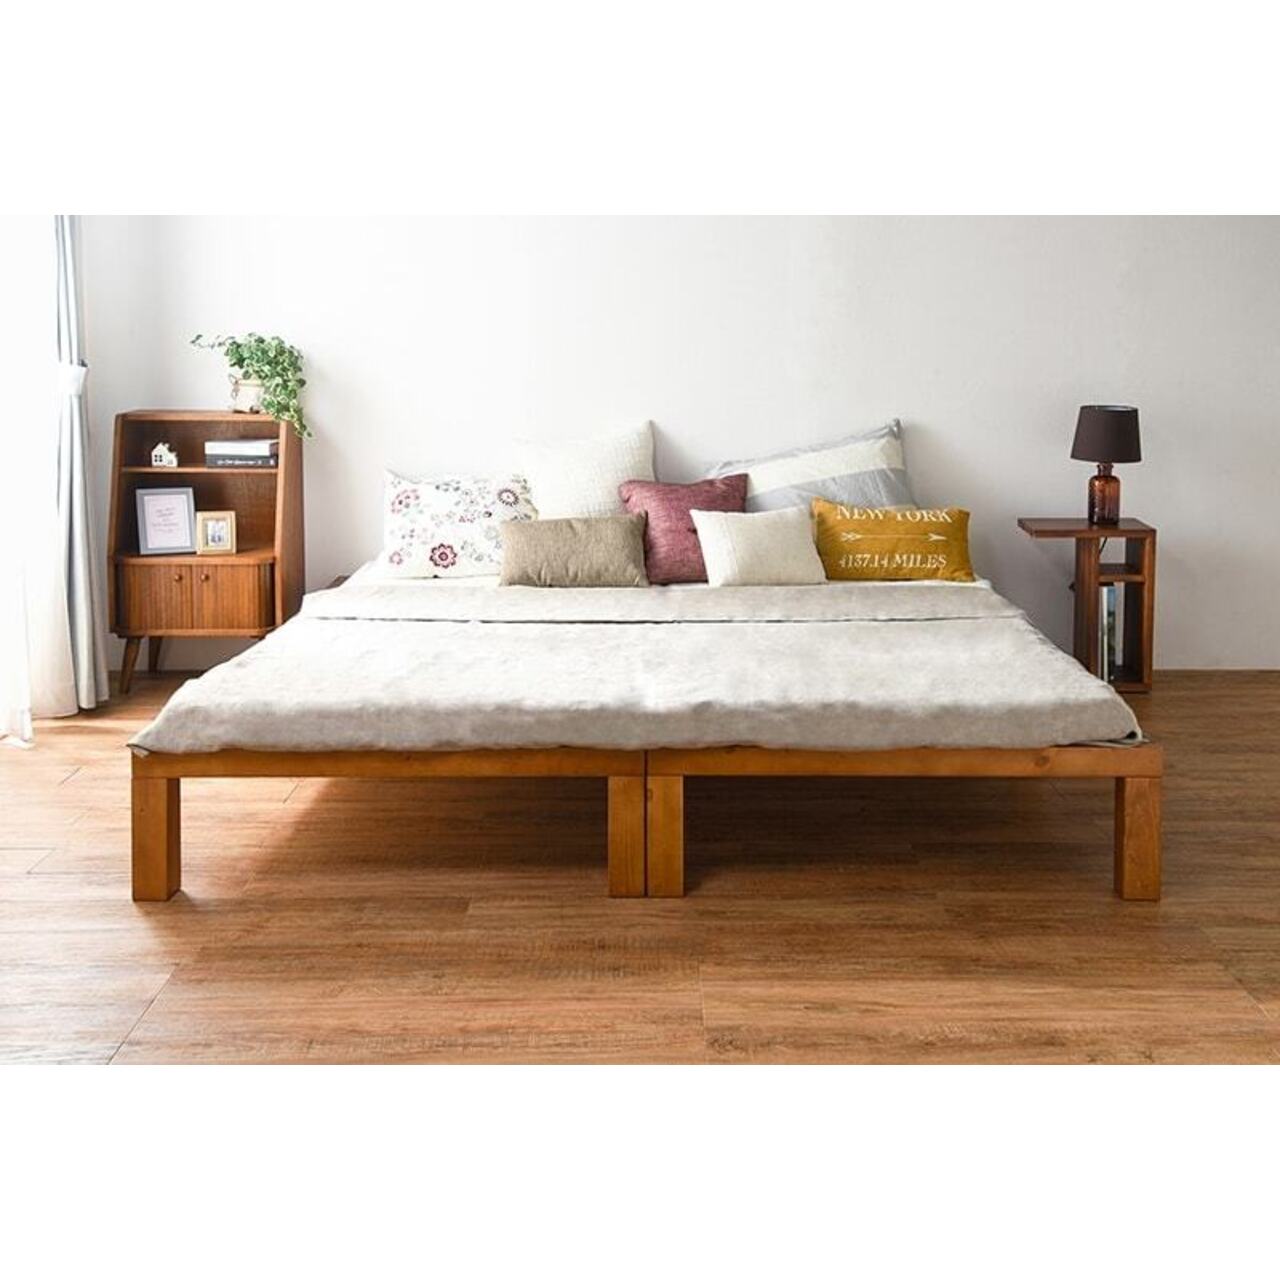 シングル すのこベッド 天然木 [幅98/長さ196.5] | おしゃれな家具